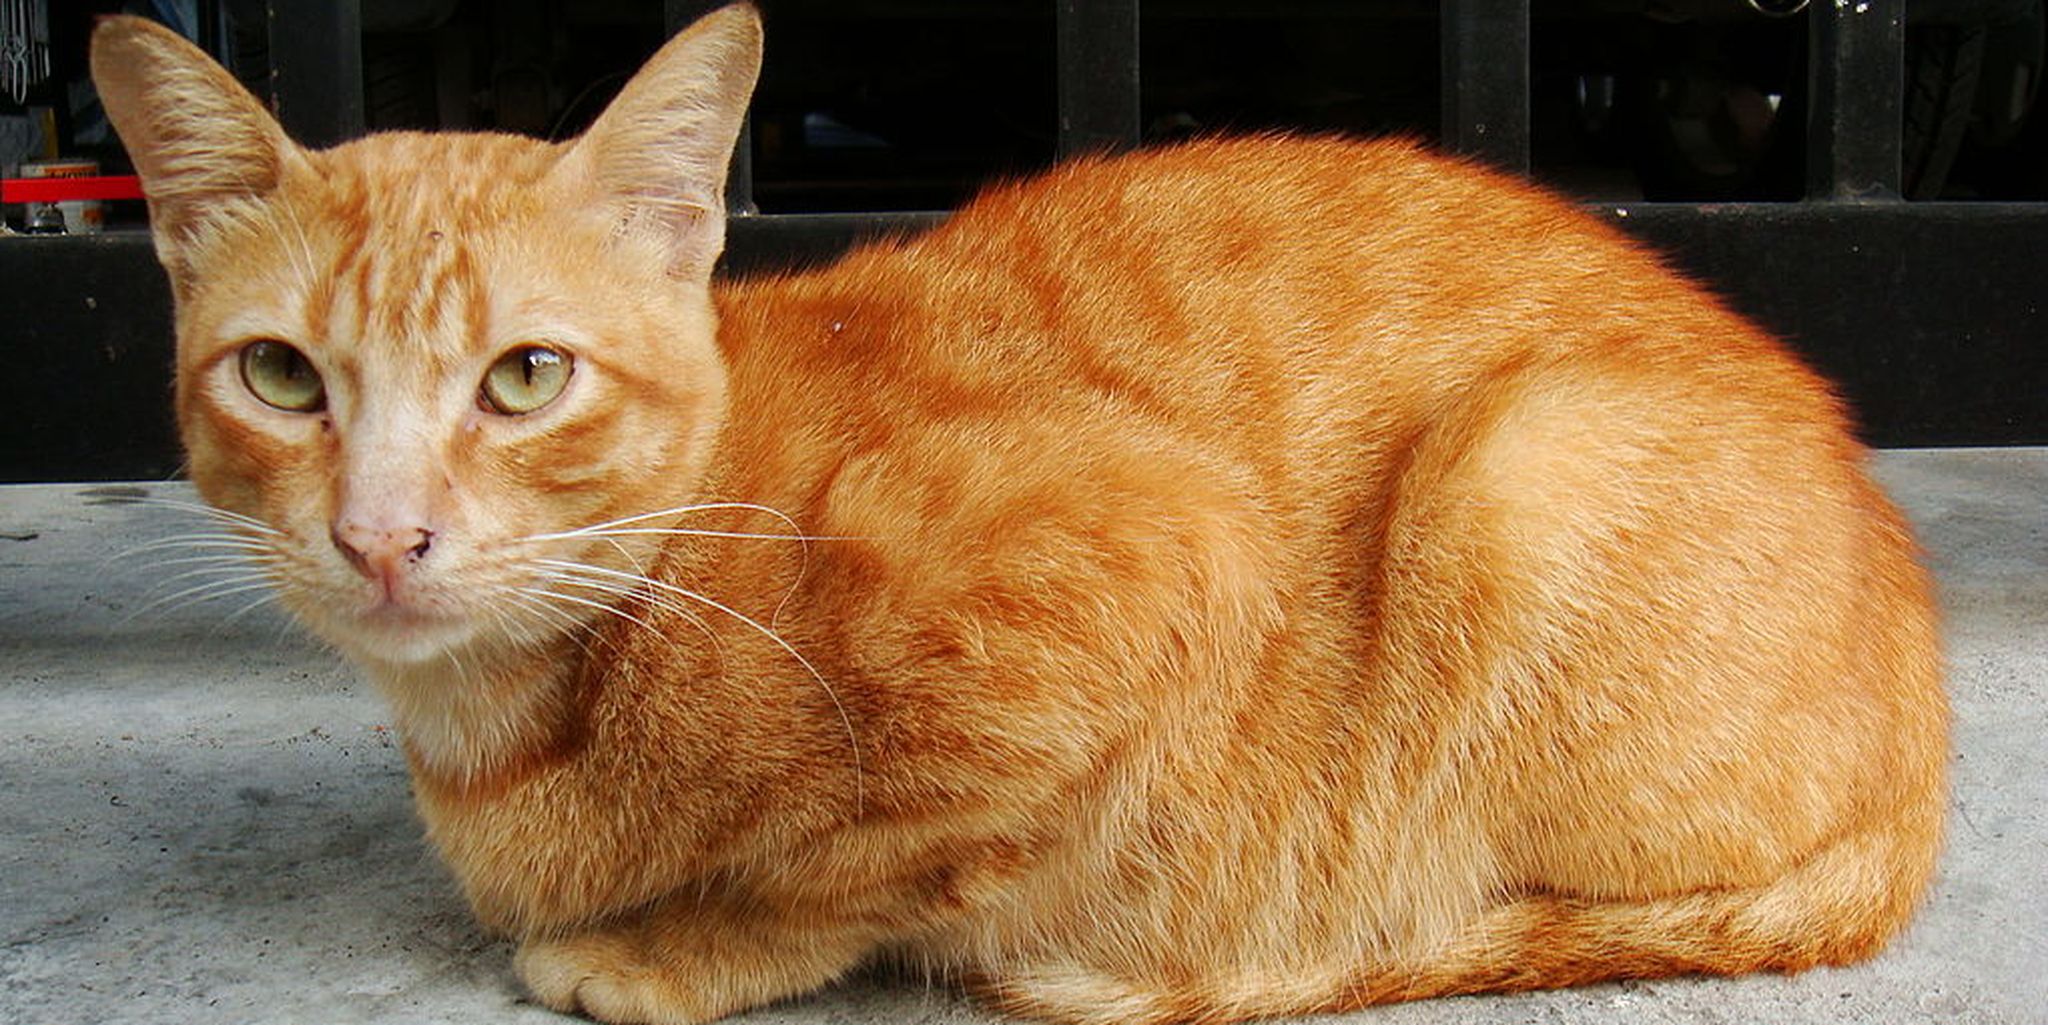 Типы рыжих кошек. Европейская короткошерстная табби рыжий. Цейлонская короткошерстная кошка рыжая. Ginger tabby Cat порода. Бразильская короткошерстная кошка рыжая цейлонская.